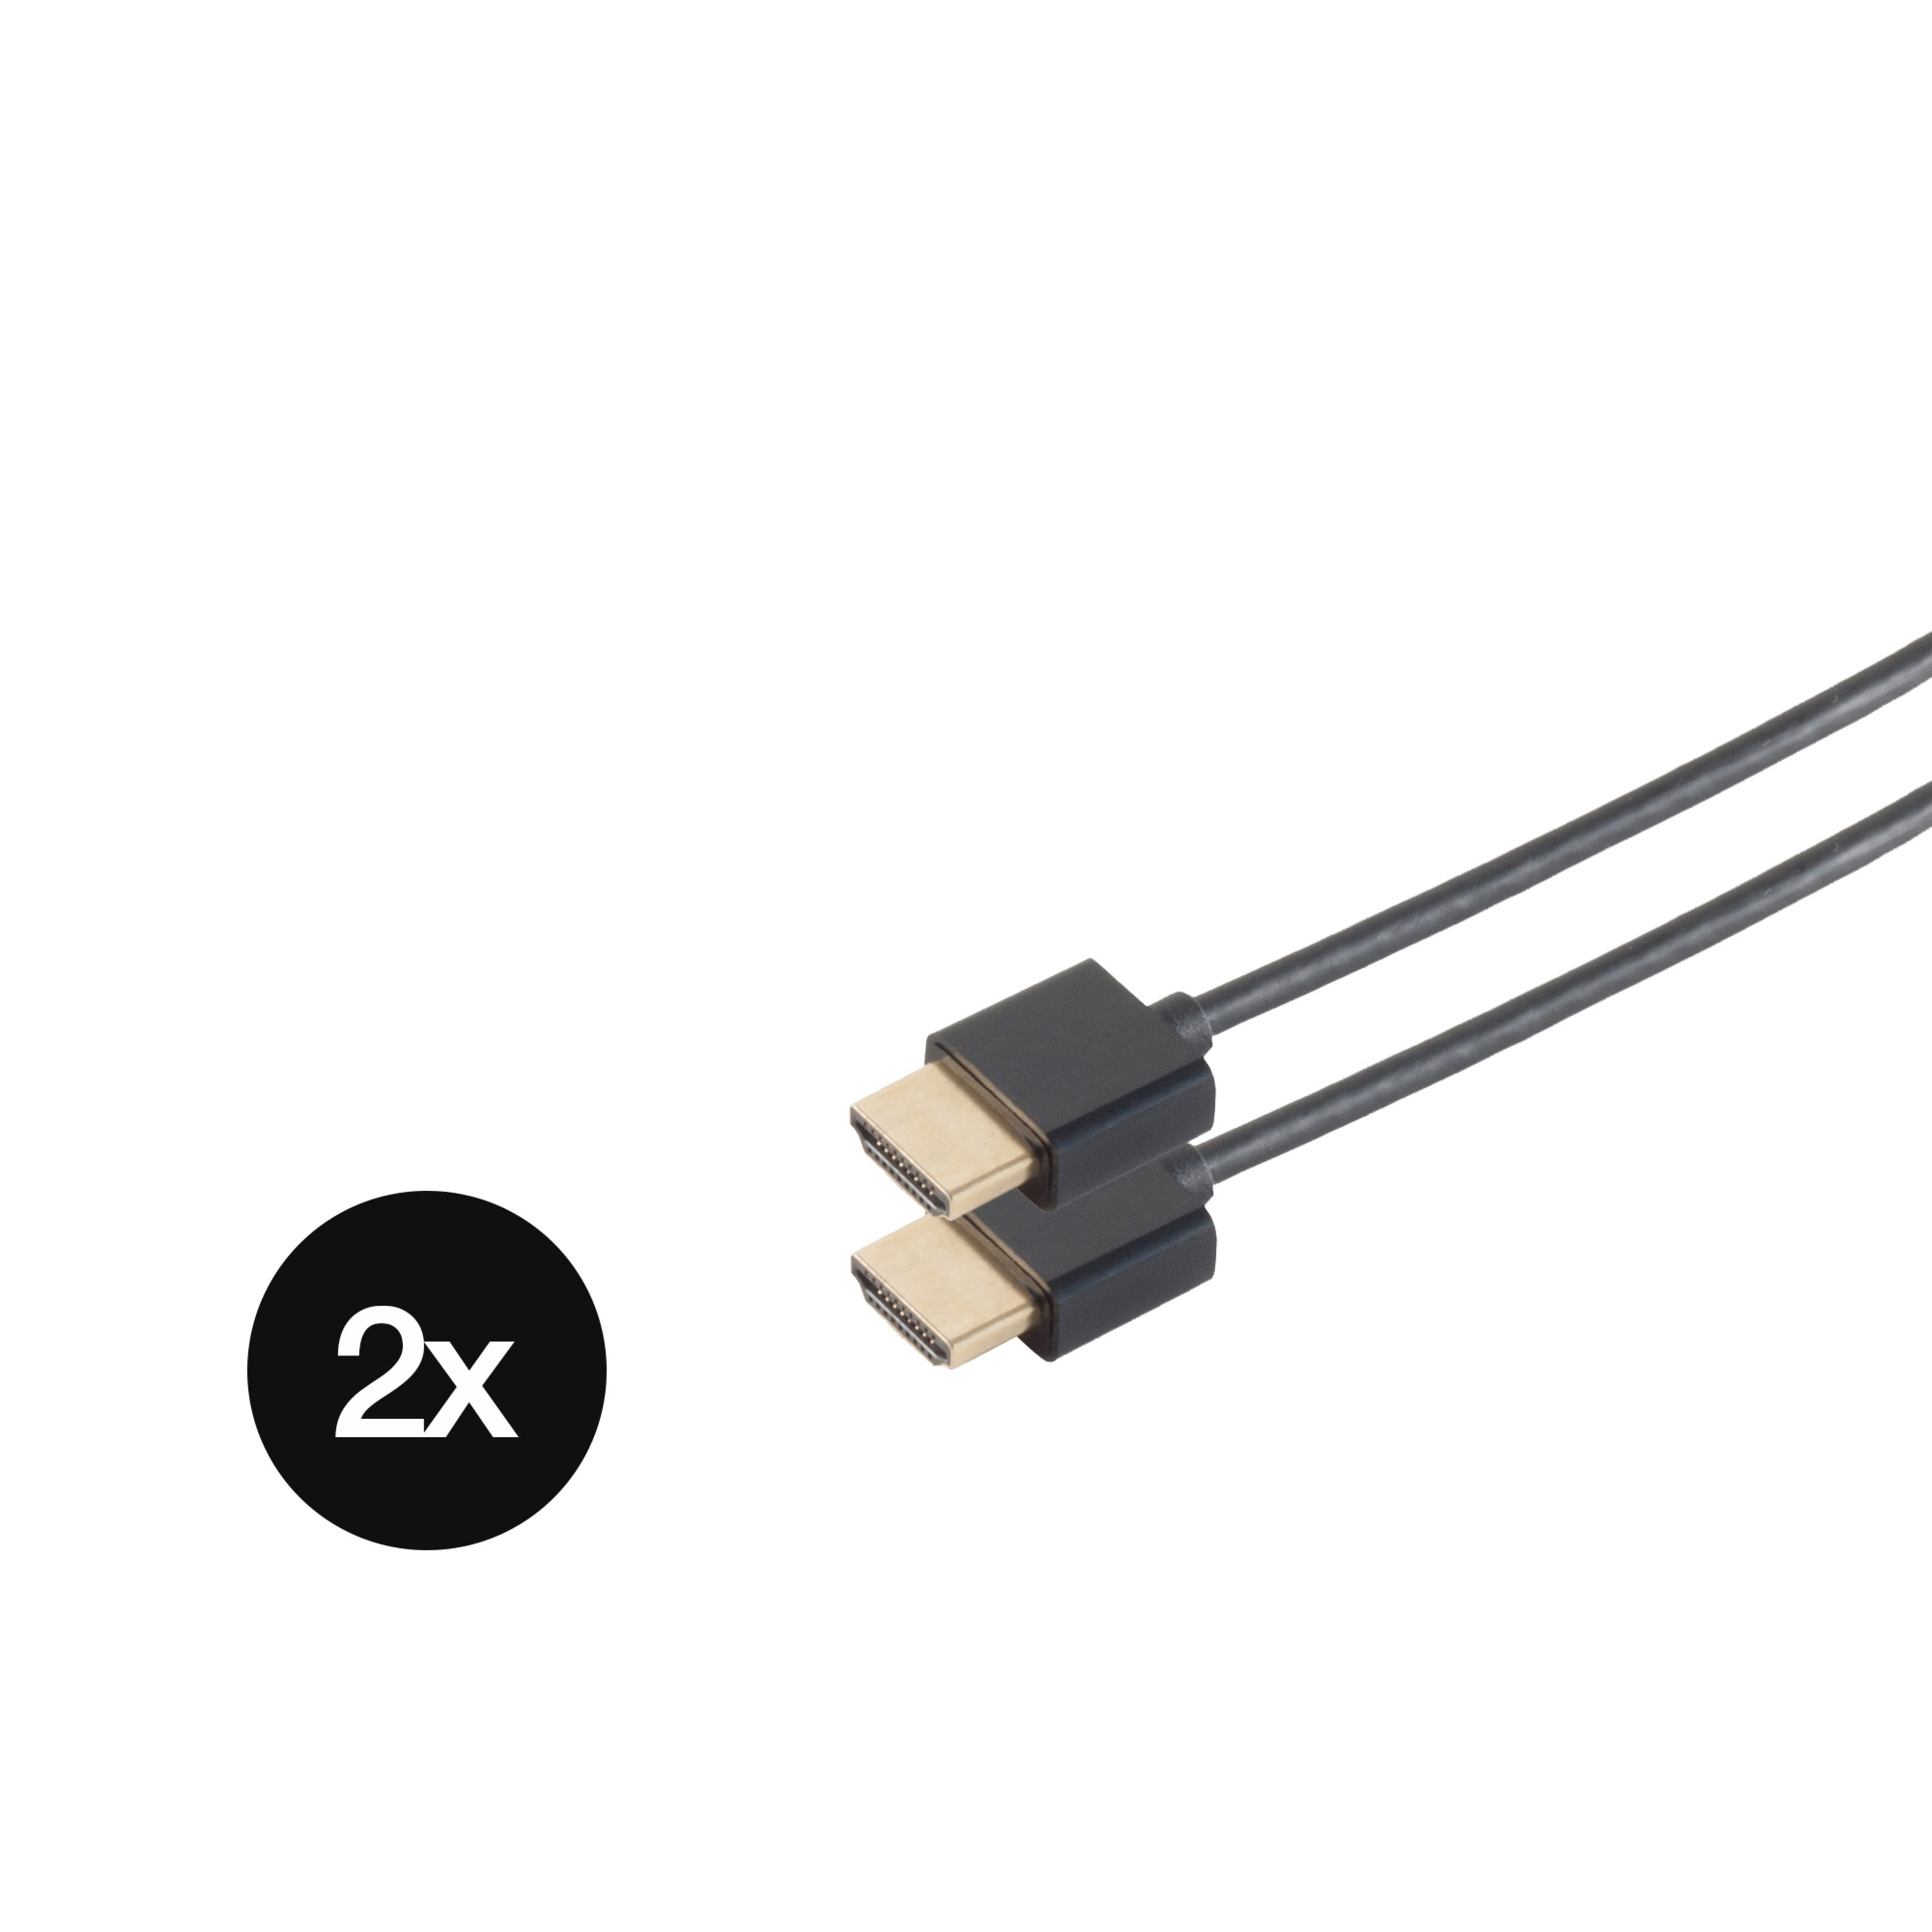 KABELBUDE SET SLIM-HDMI dünn 2 Kabel Kabel 1,5m x schwarz HDMI extra